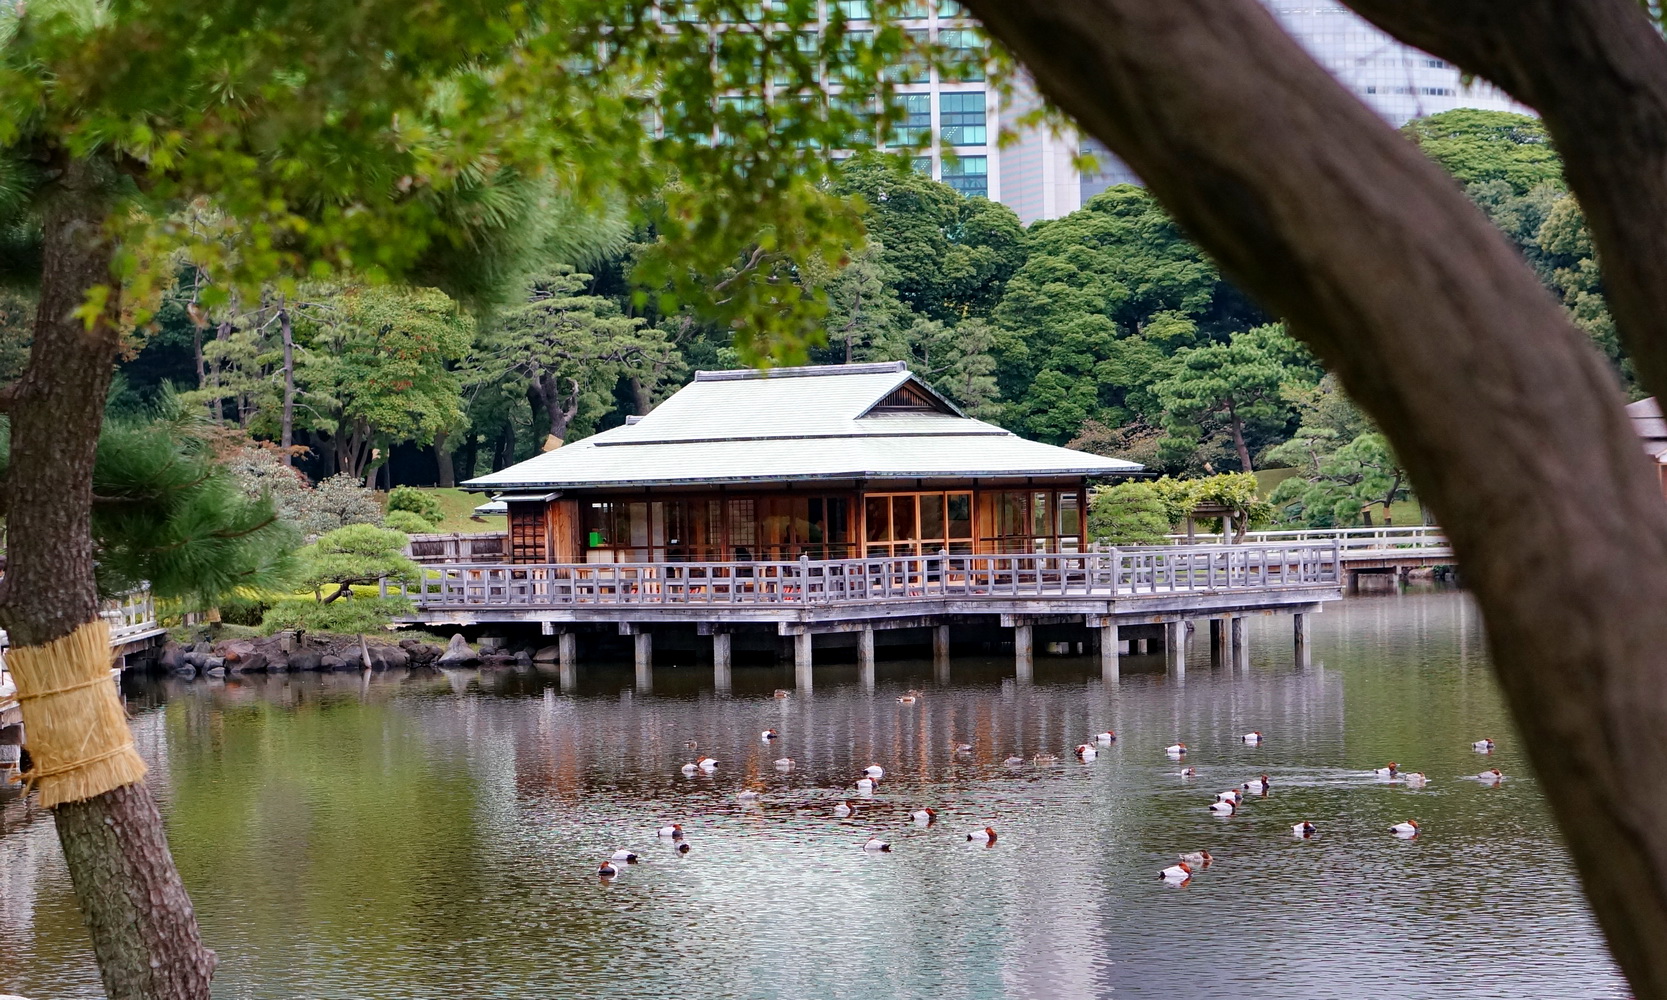 hama-rikyu gardens, jardin hama-rikyu, baie de tokyo, tsukiji, japon, voyage au japon, japan trip, tokyo, tokyo city guide, nakajima tea house, maison de thé tokyo